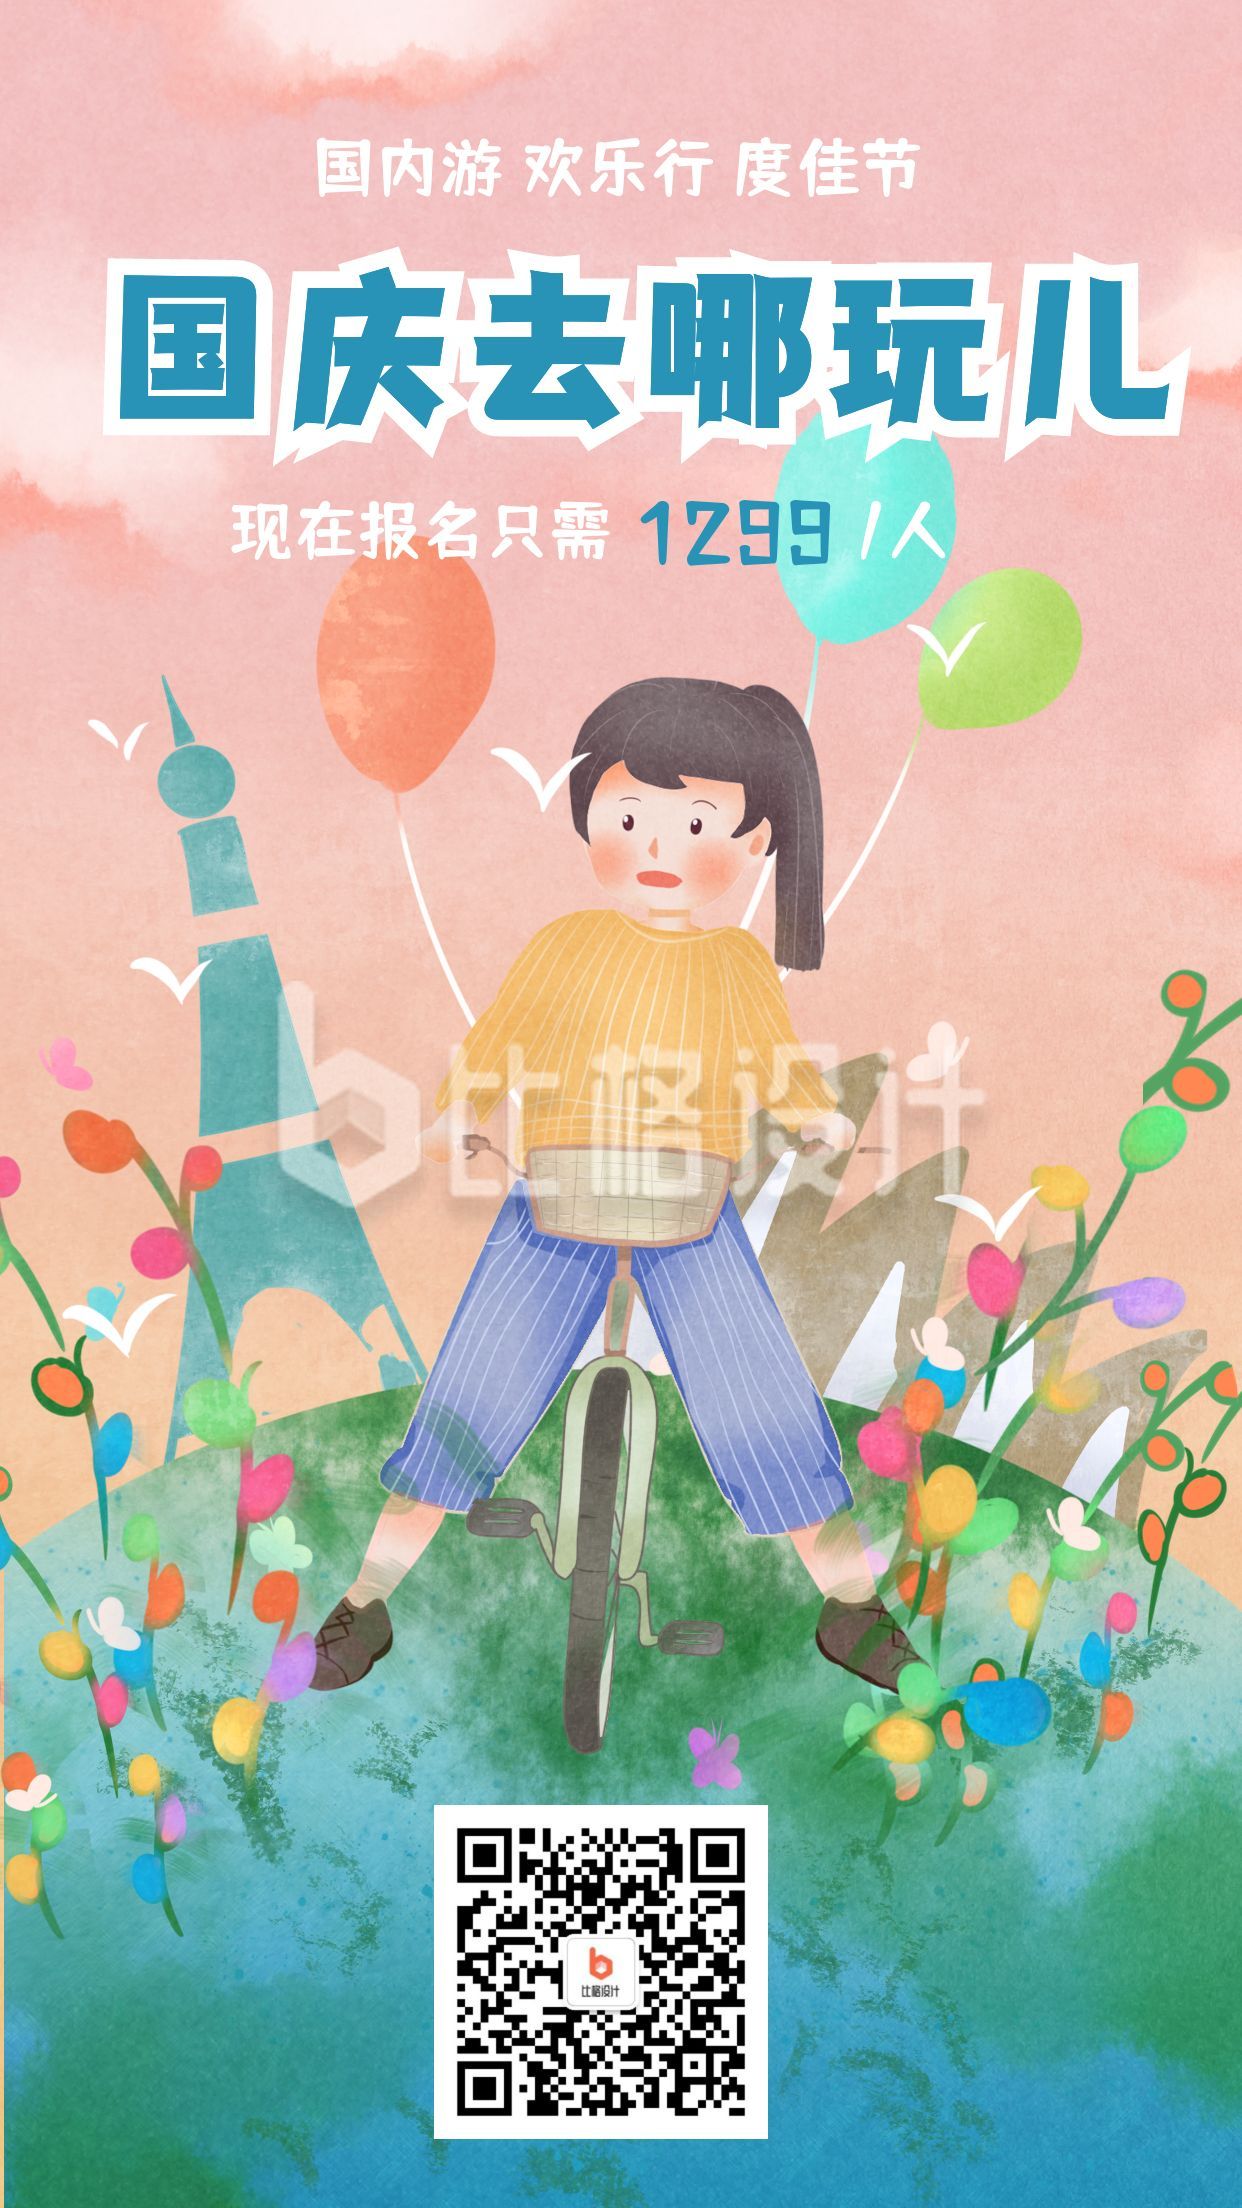 国庆双节同庆旅行优惠活动插画手机海报